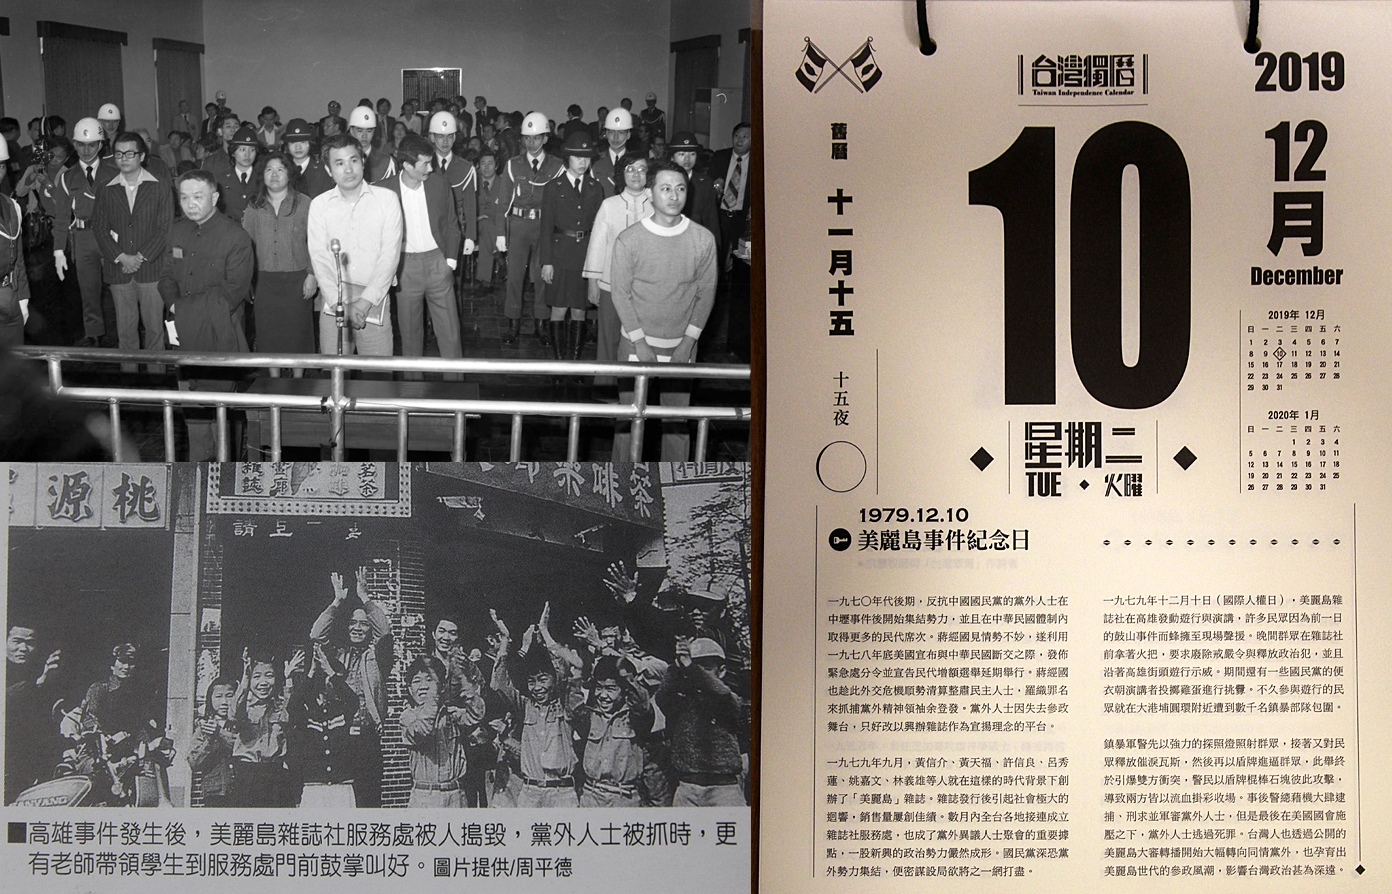 1979.12.10 美麗島事件 - 台灣回憶探險團